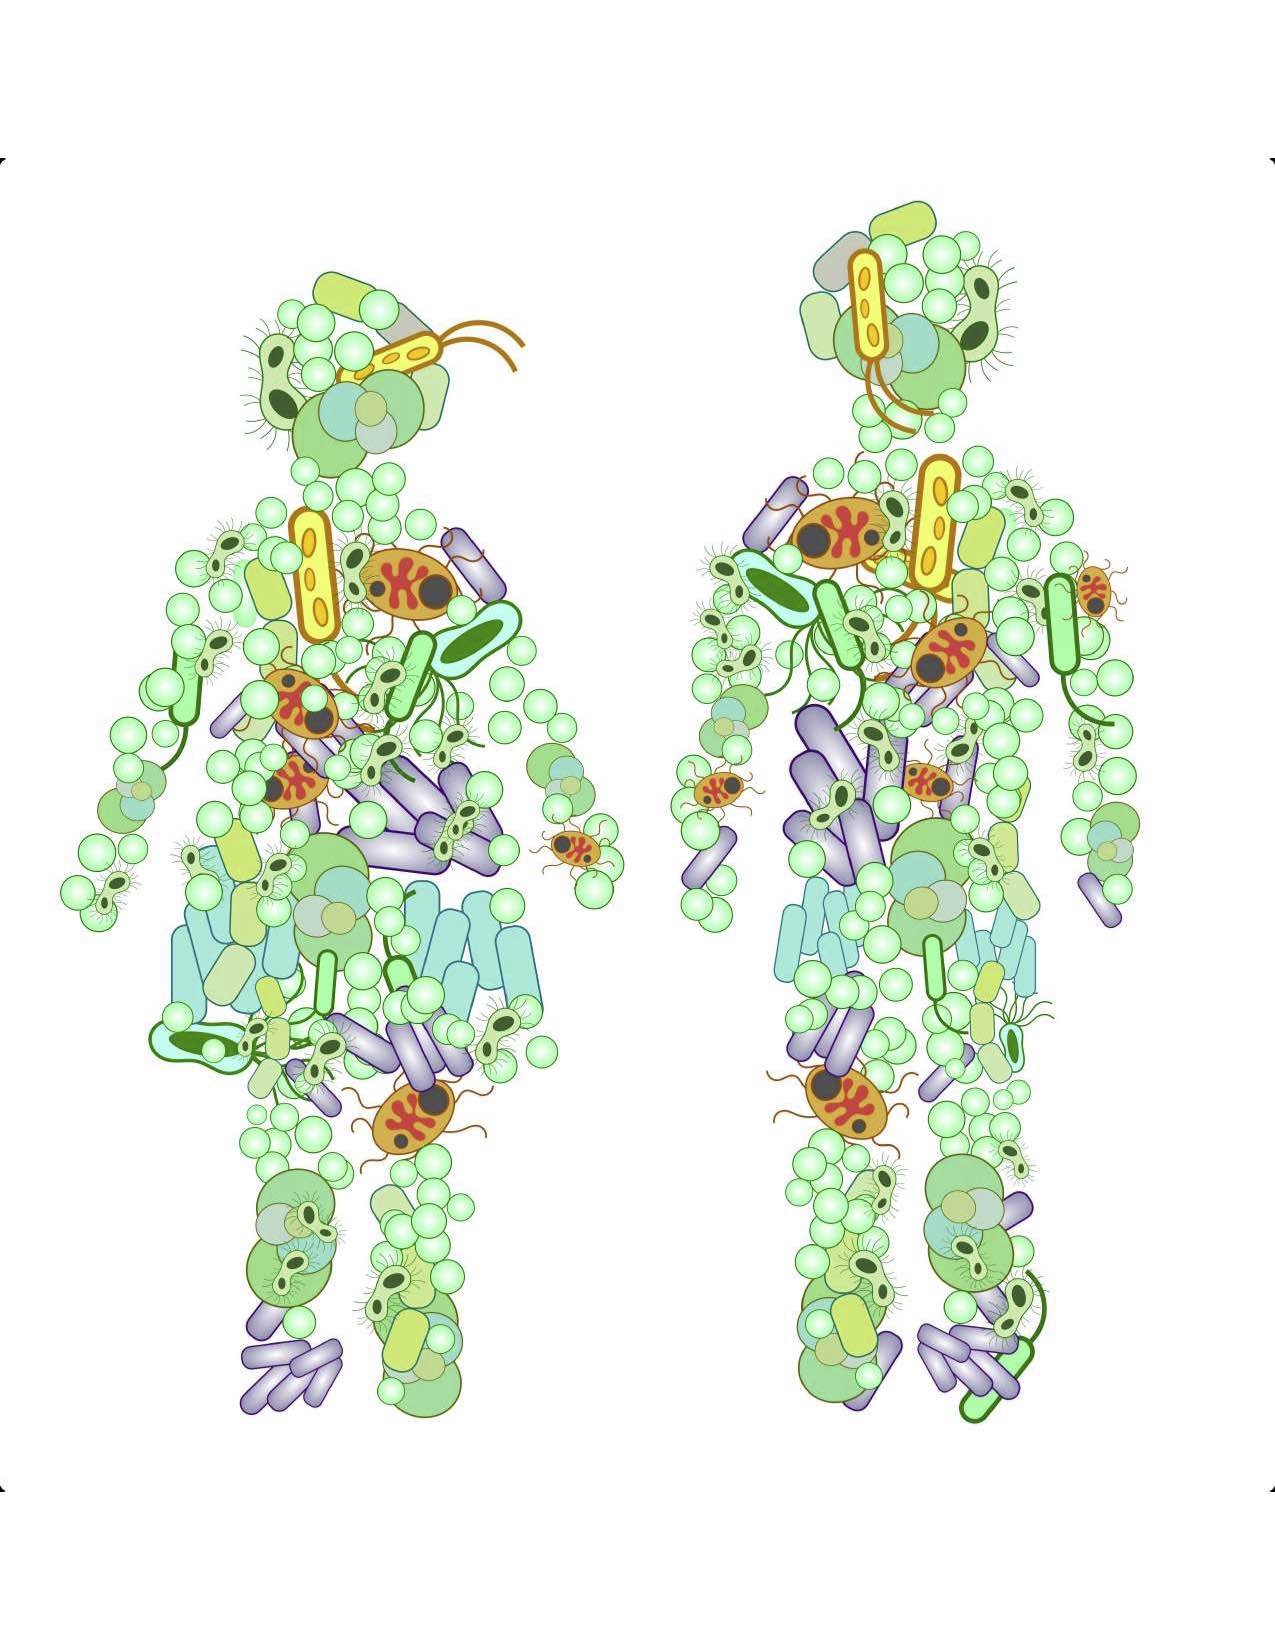 Ilustración de microbios en forma de dos cuerpos humanos codificados como femenino y masculino